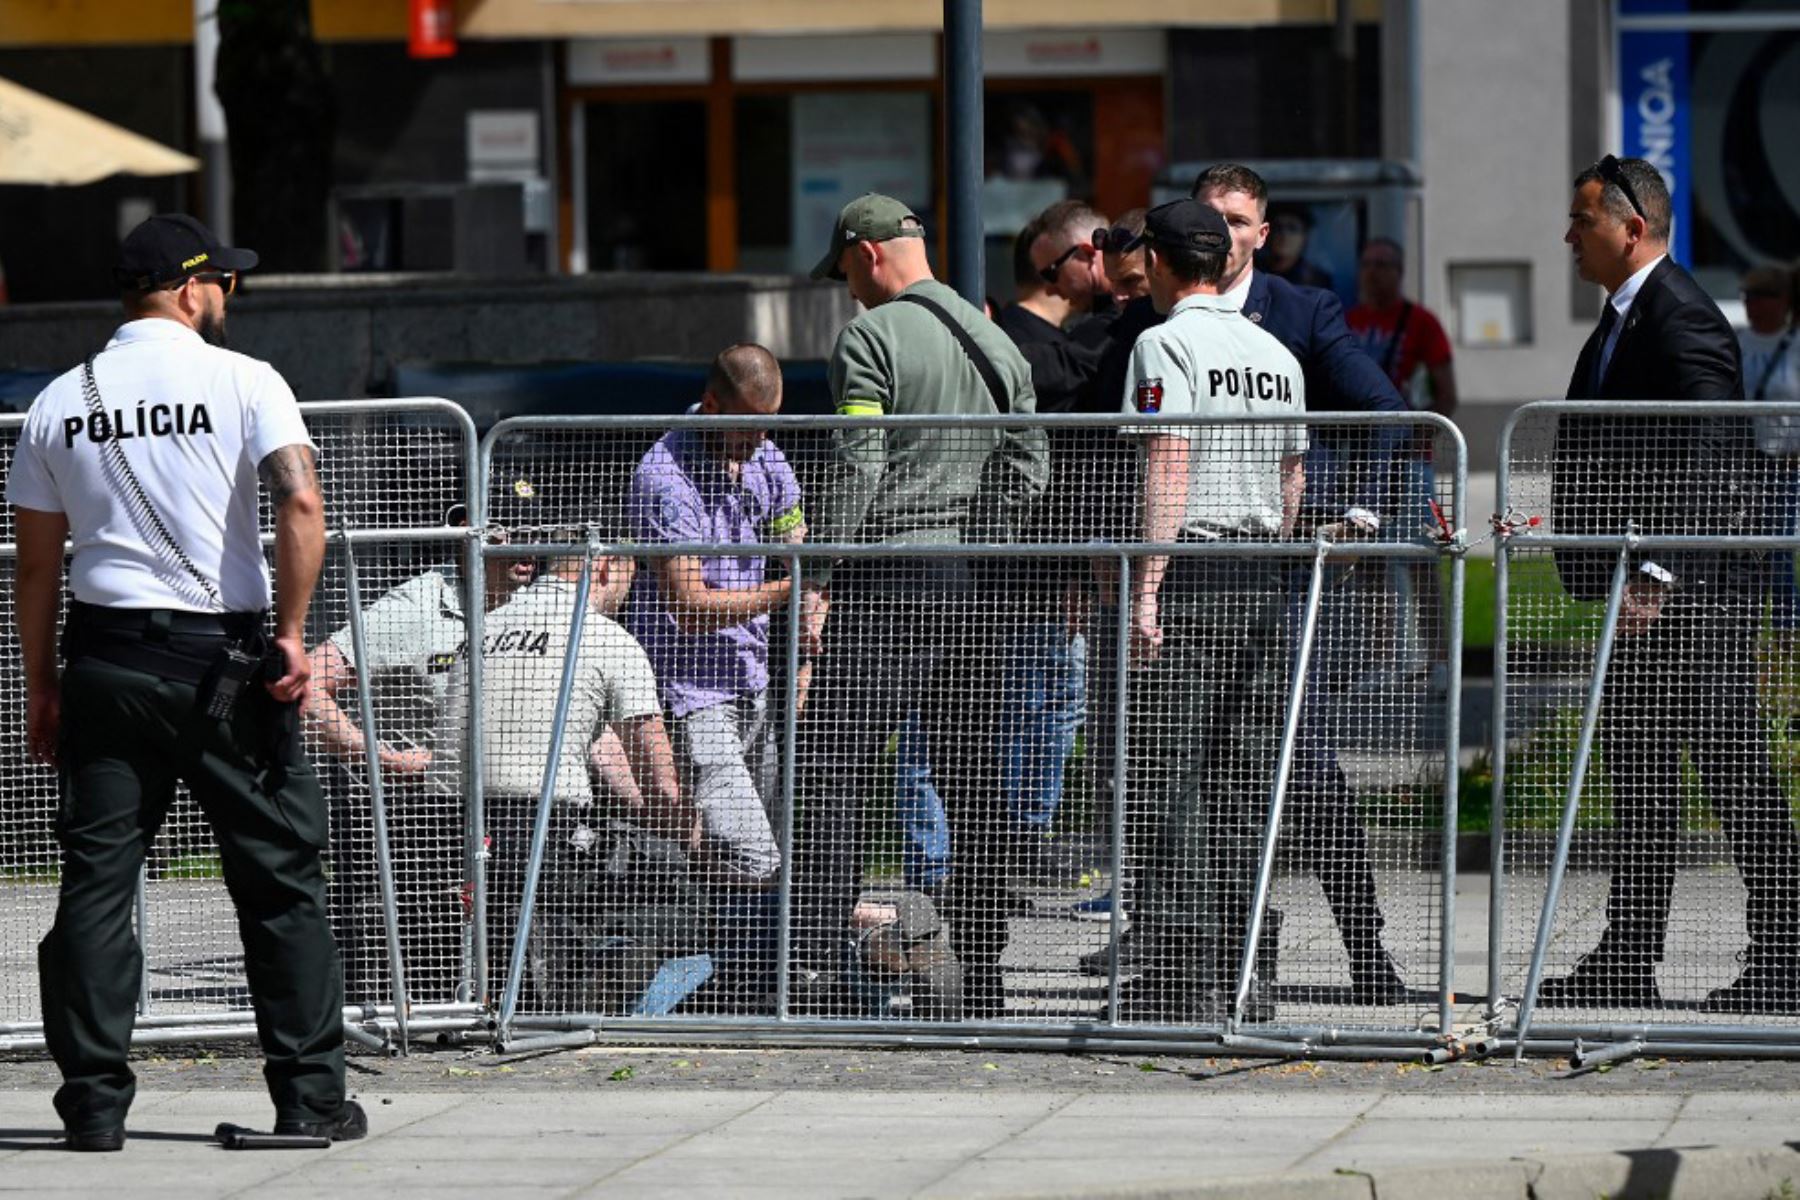 La presidente eslovaca, Zuzana Caputova, anunció en un comunicado que "la policía detuvo al atacante" y ofrecería más información "tan pronto como sea posible". Foto: AFP